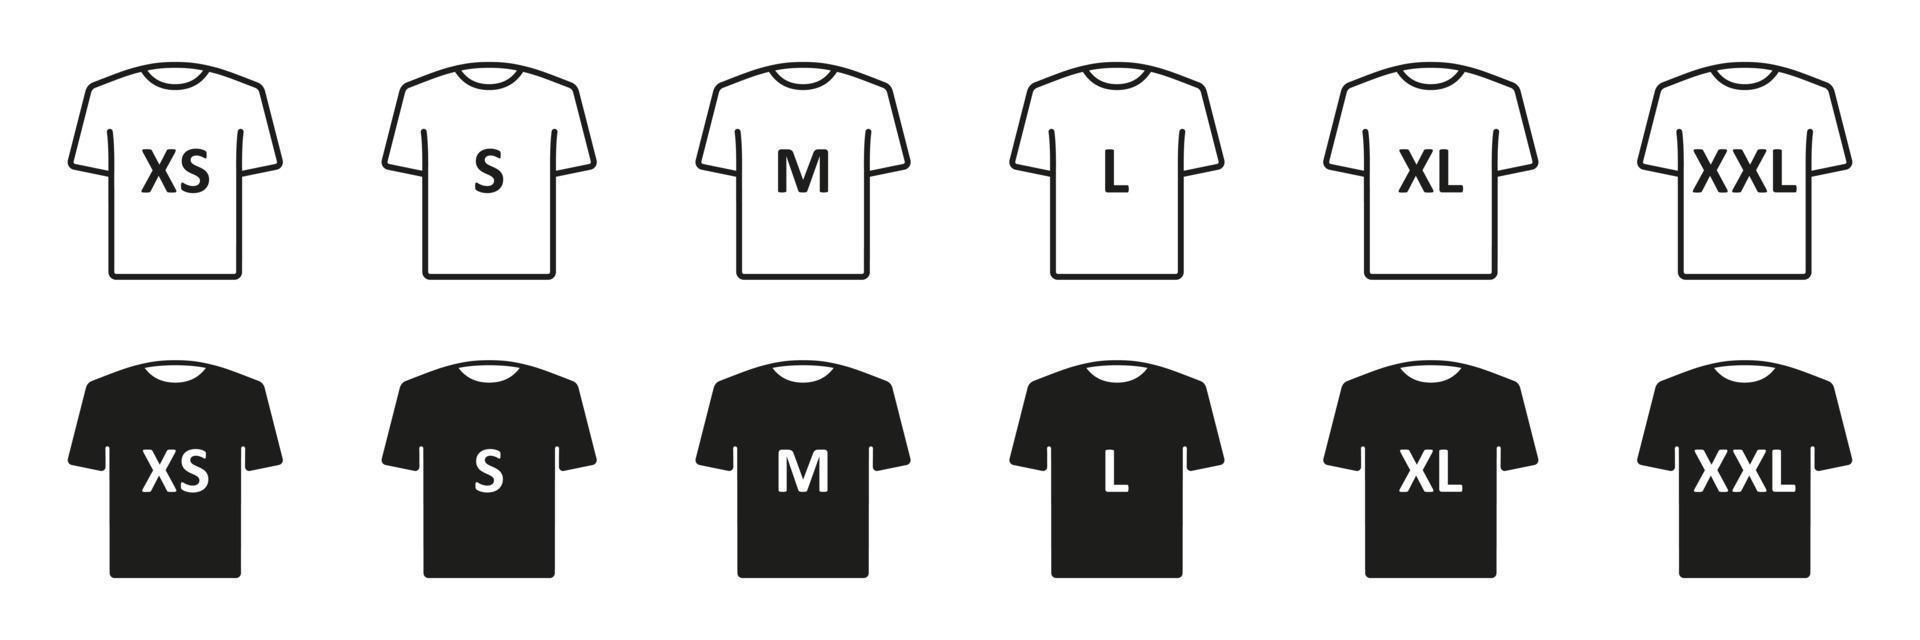 maglietta dimensione nero silhouette e linea icone impostare. umano capi di abbigliamento dimensione etichetta. uomo o donna maglietta dimensione etichetta. isolato vettore illustrazione.